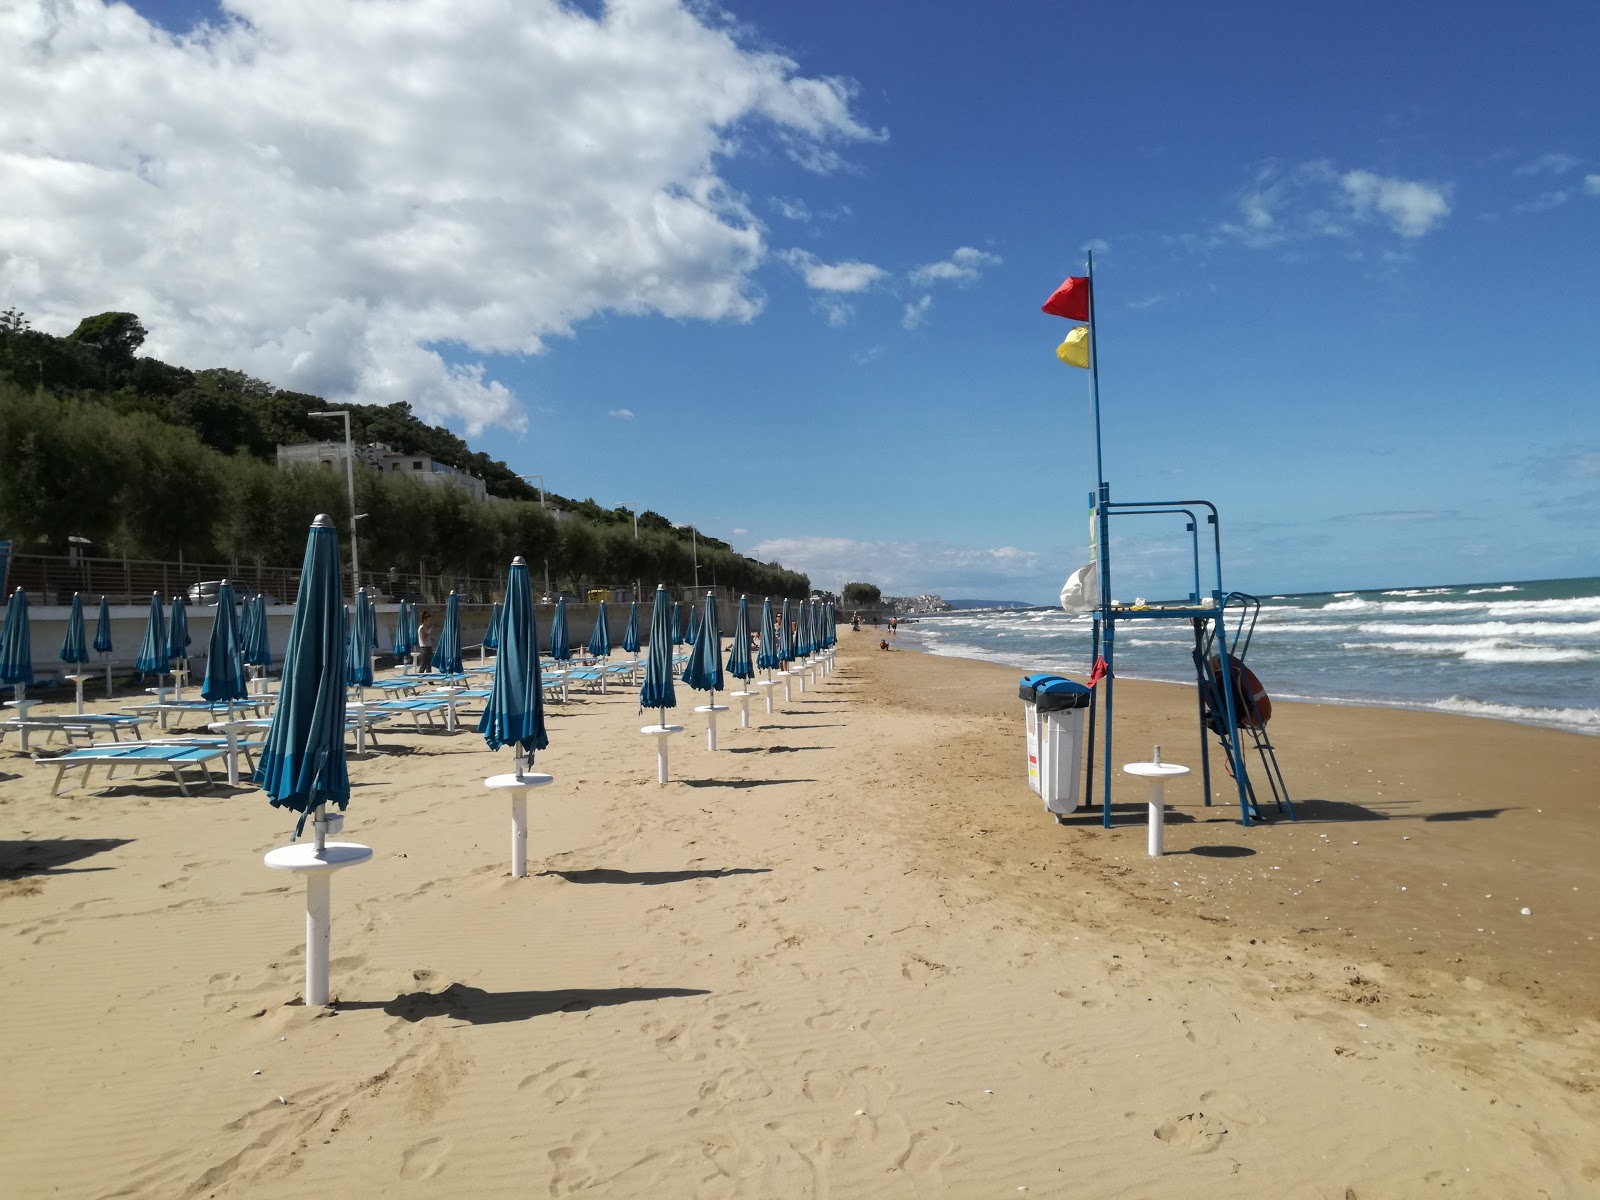 Spiaggia di San Menaio'in fotoğrafı çok temiz temizlik seviyesi ile